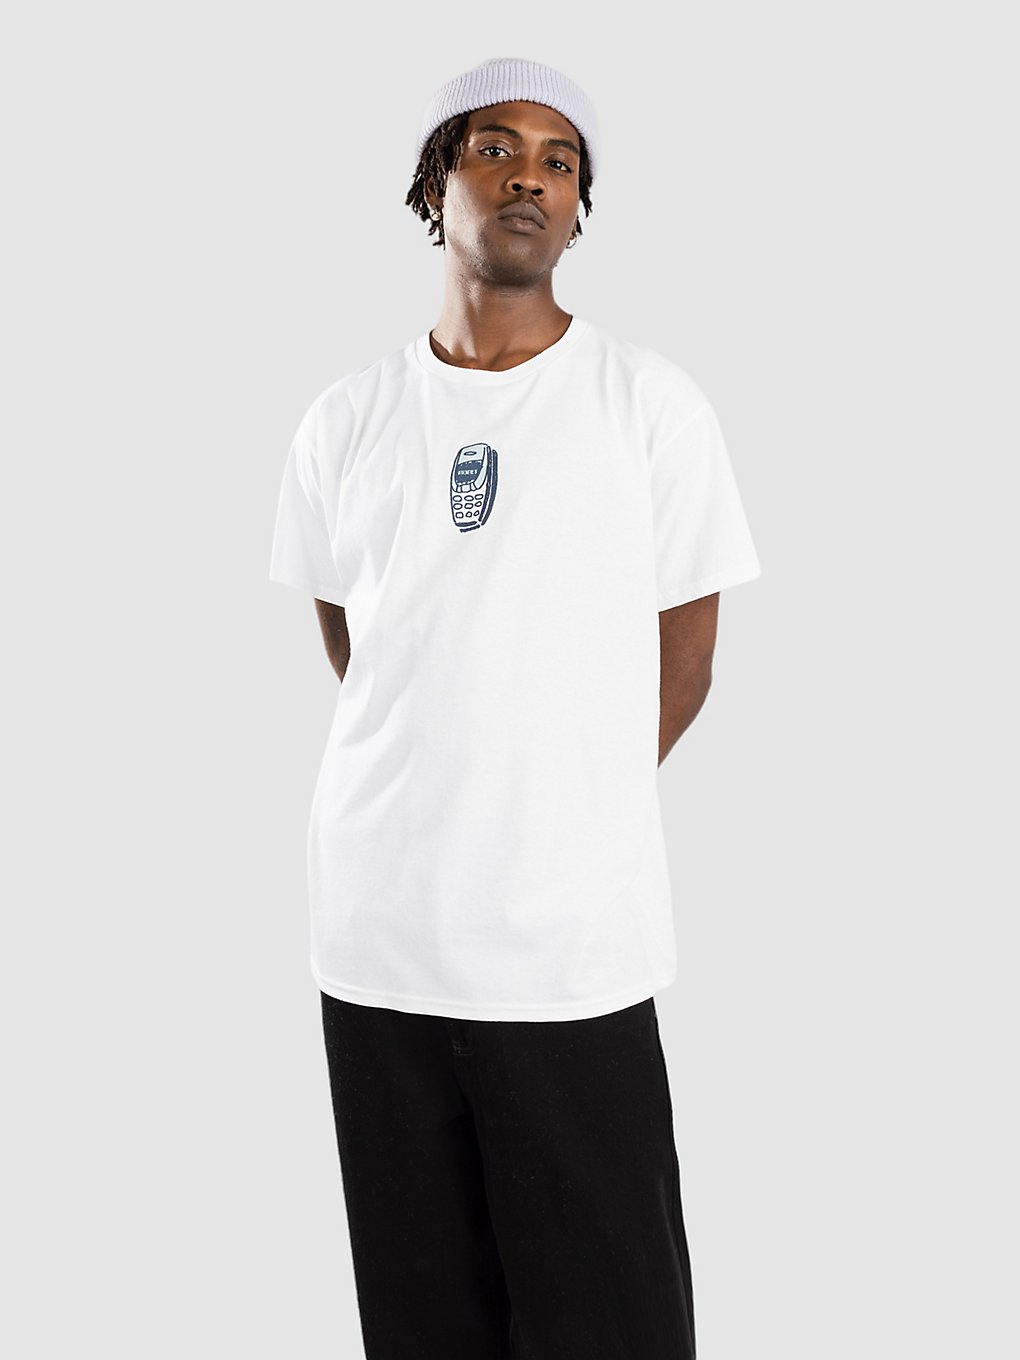 Monet Skateboards T9Wrd T-Shirt white kaufen